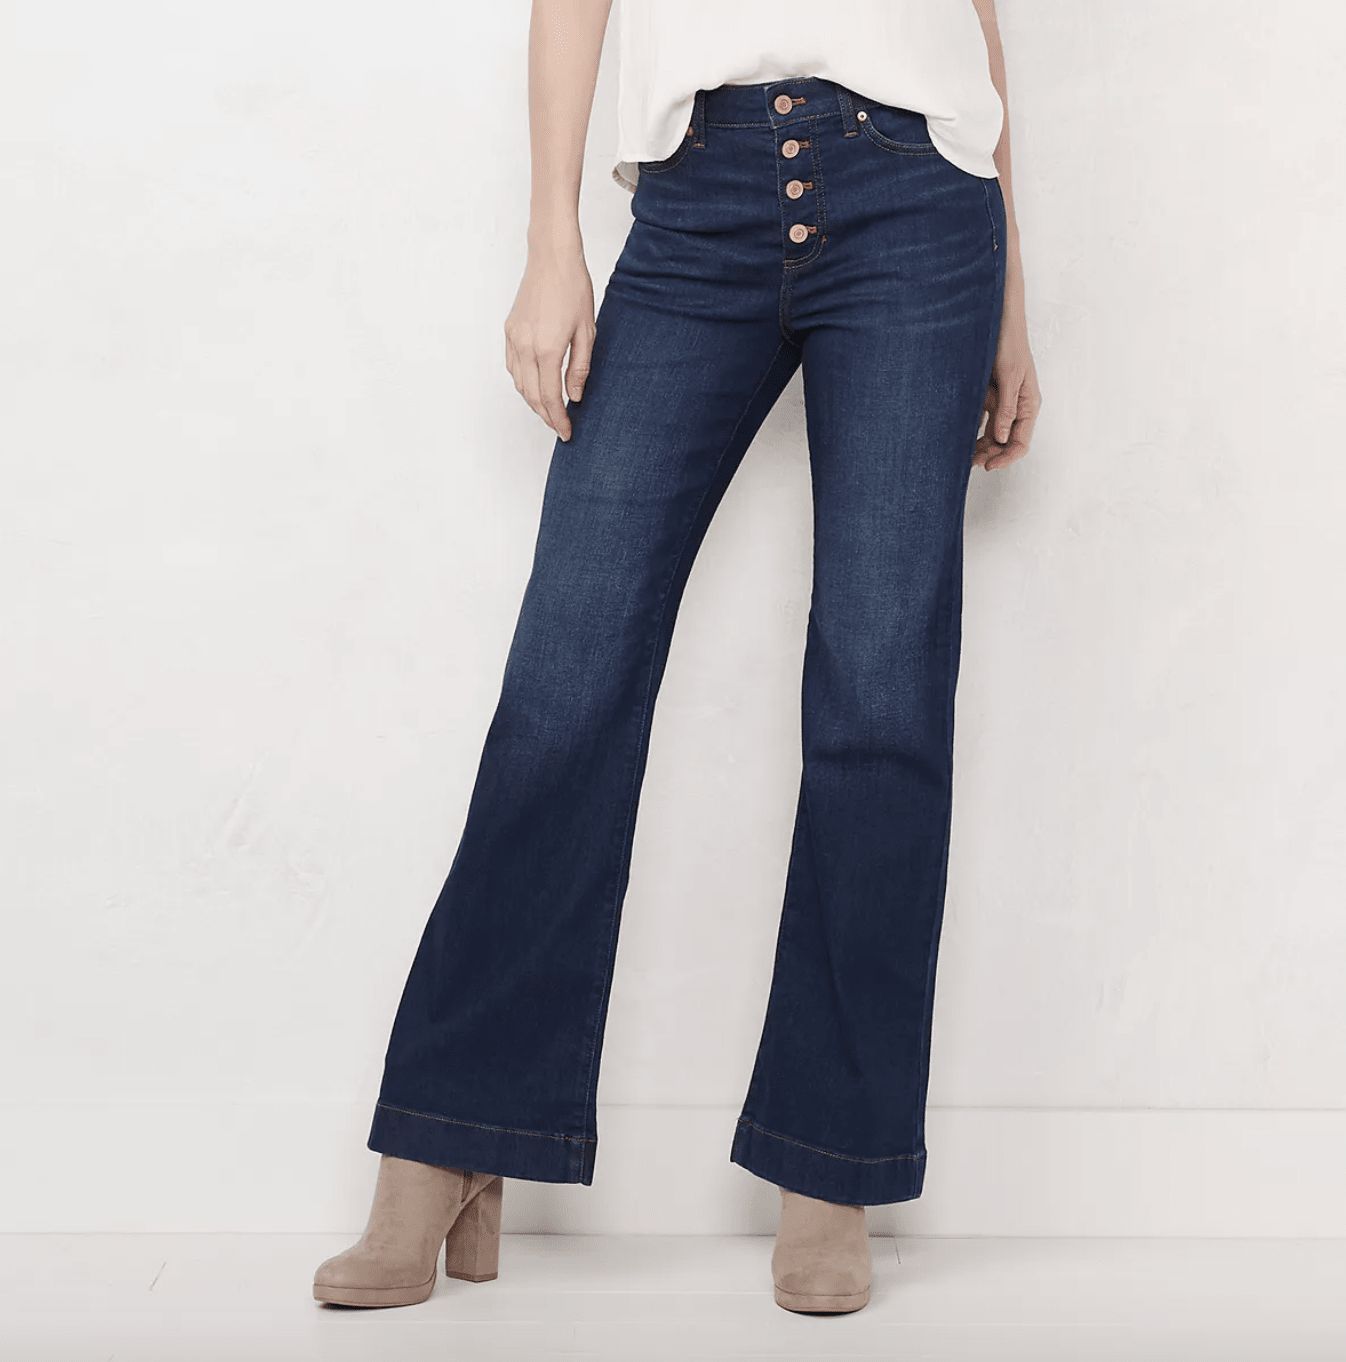 Zenana Rose Bell Bottom Jeans | lupon.gov.ph